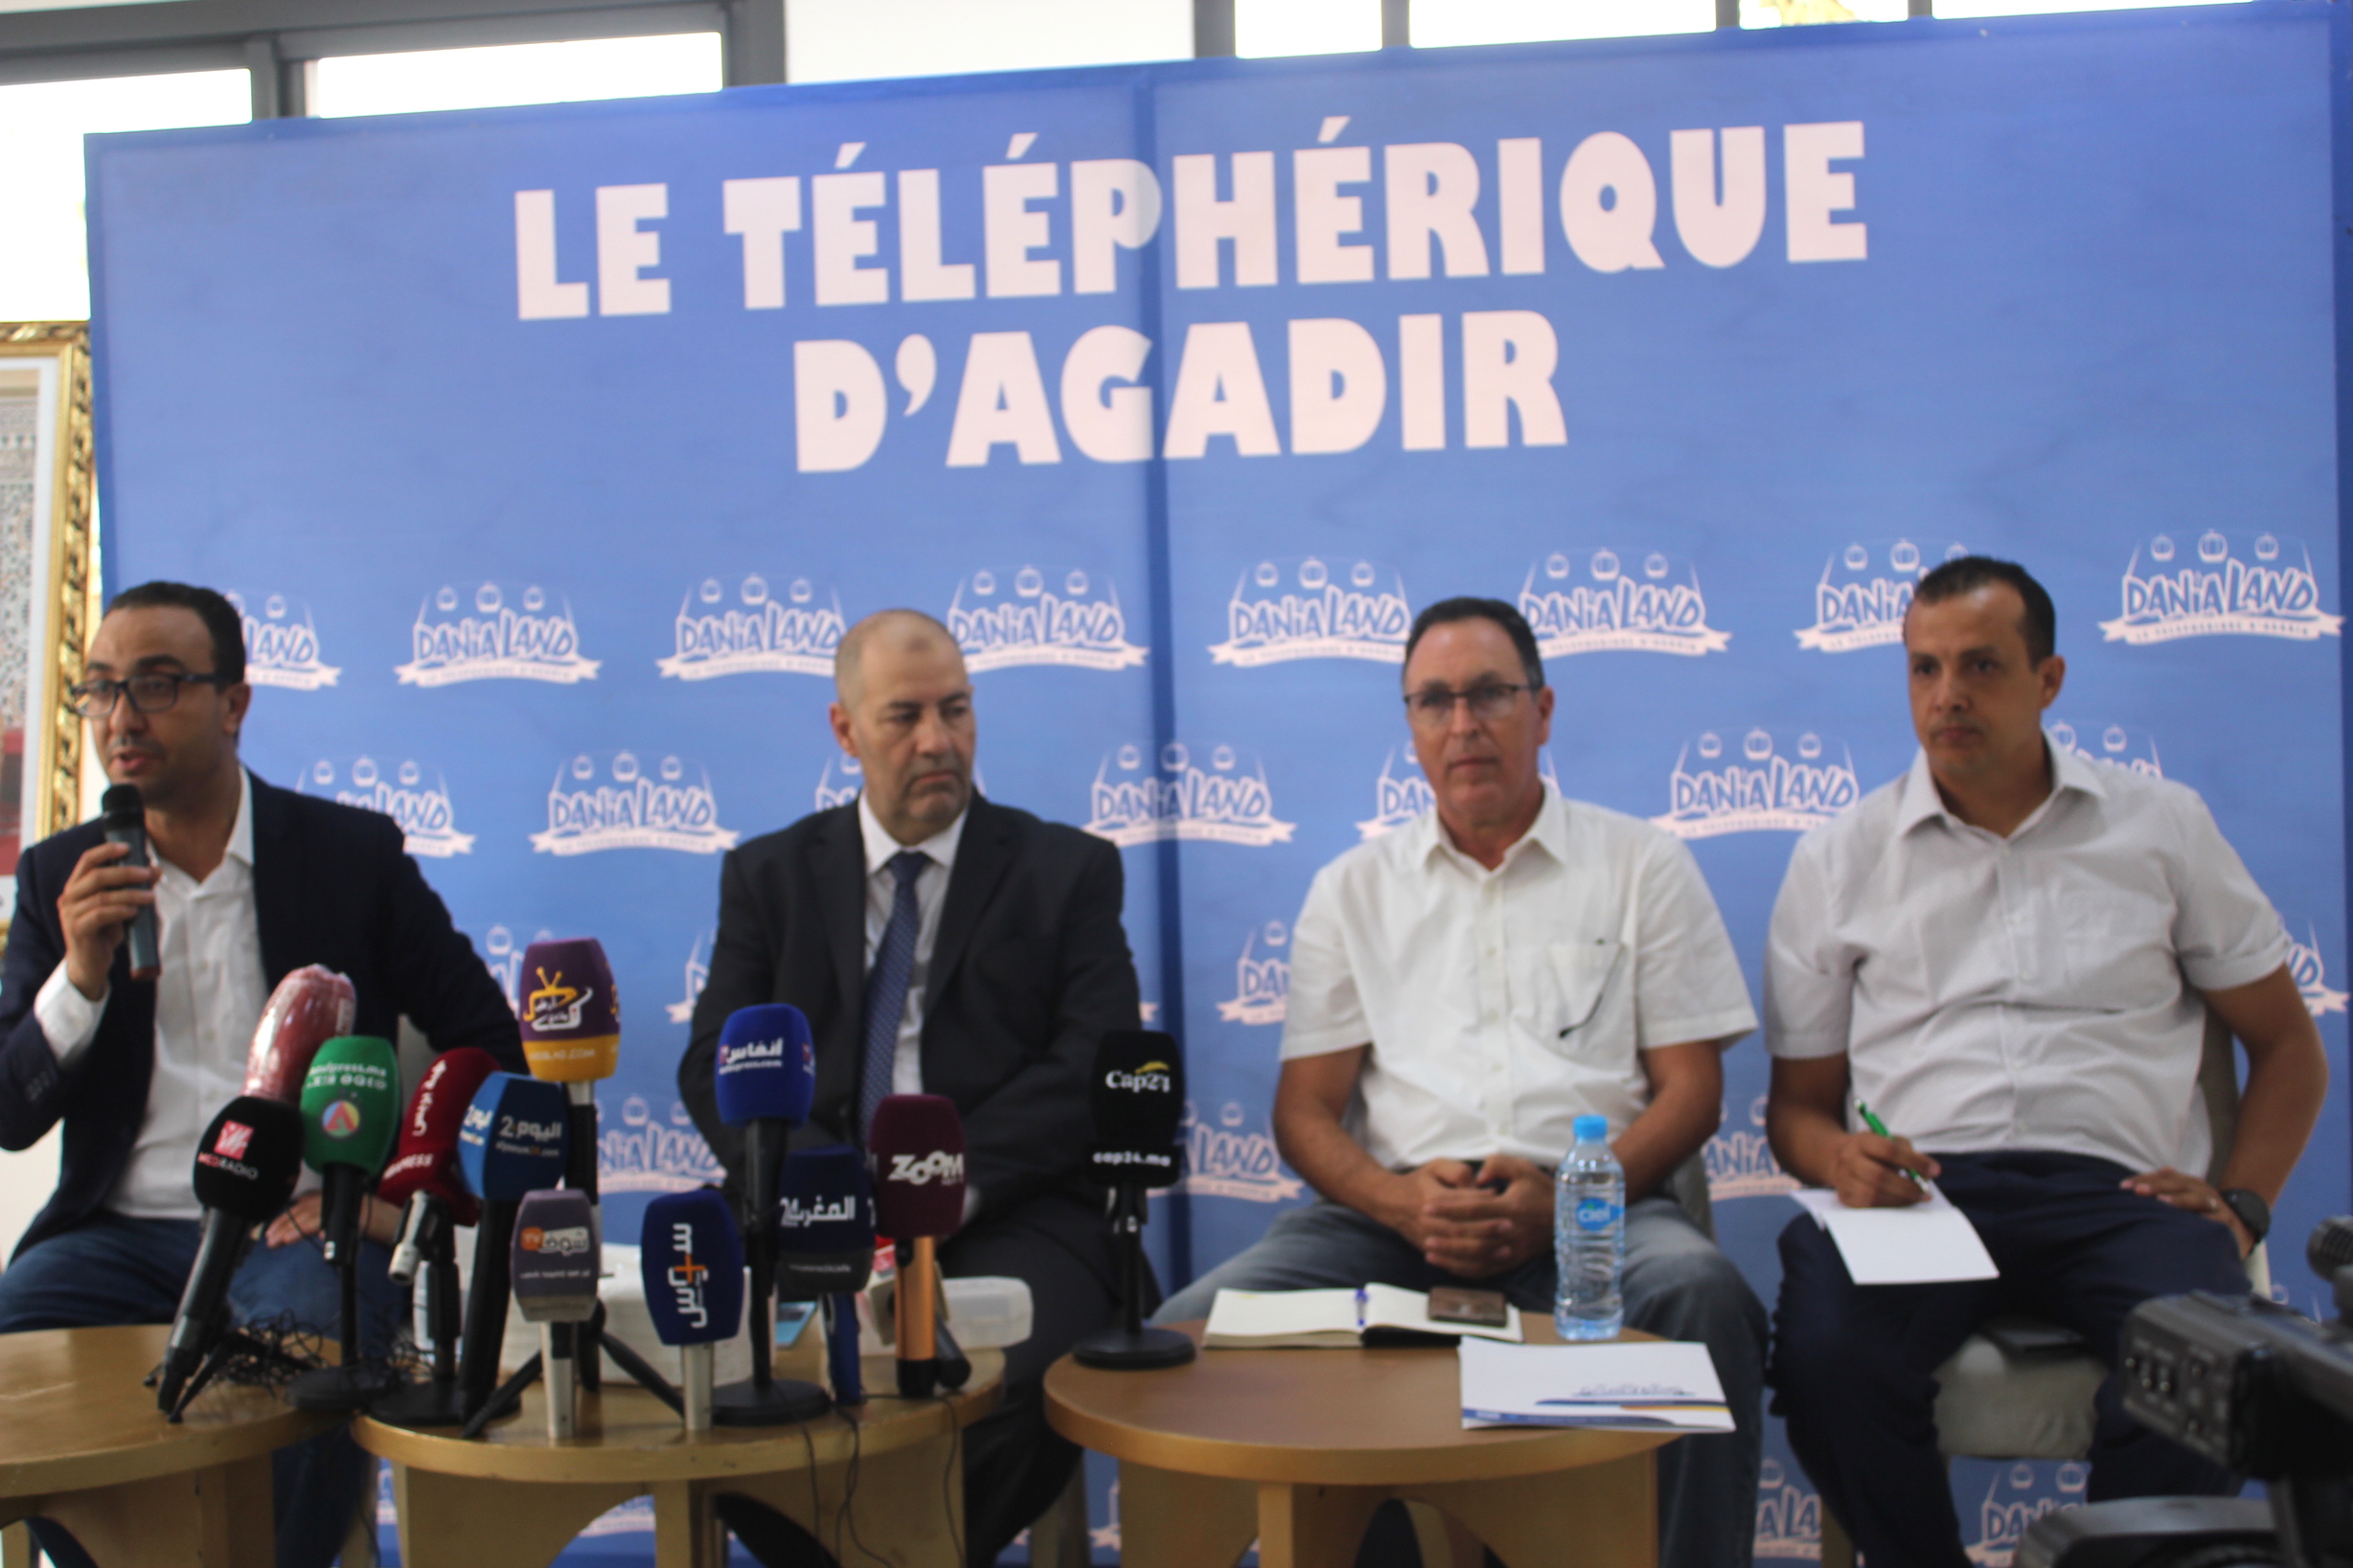 Agadir / Animation et Loisirs Touristiques :  Mise en service du téléphérique. Une grande première au Maroc.